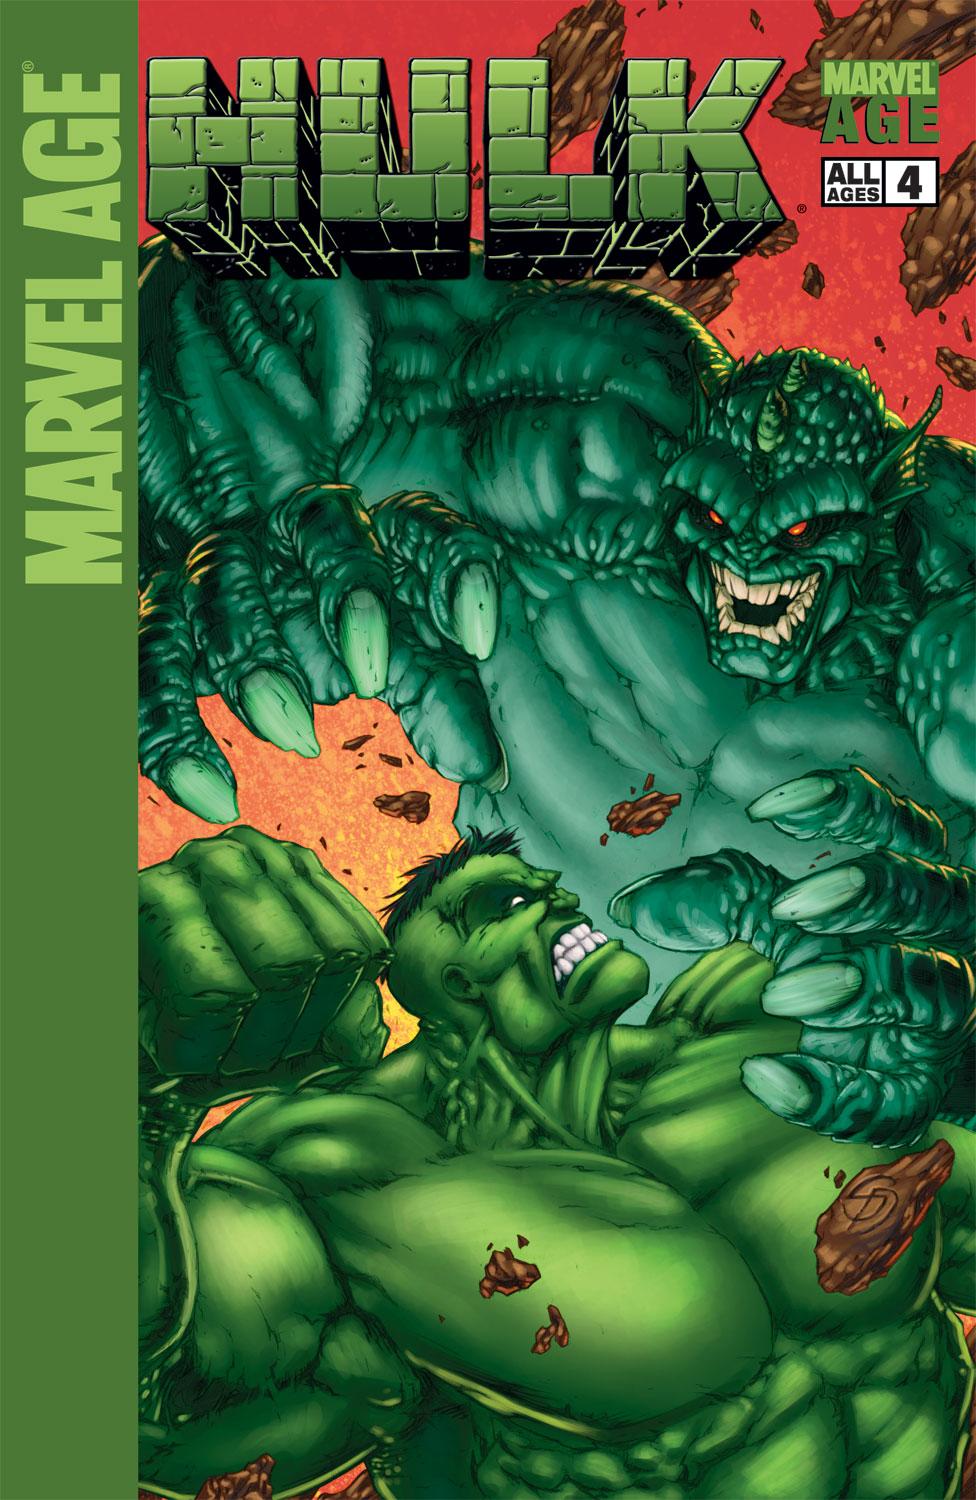 Marvel Age Hulk (2004) #4